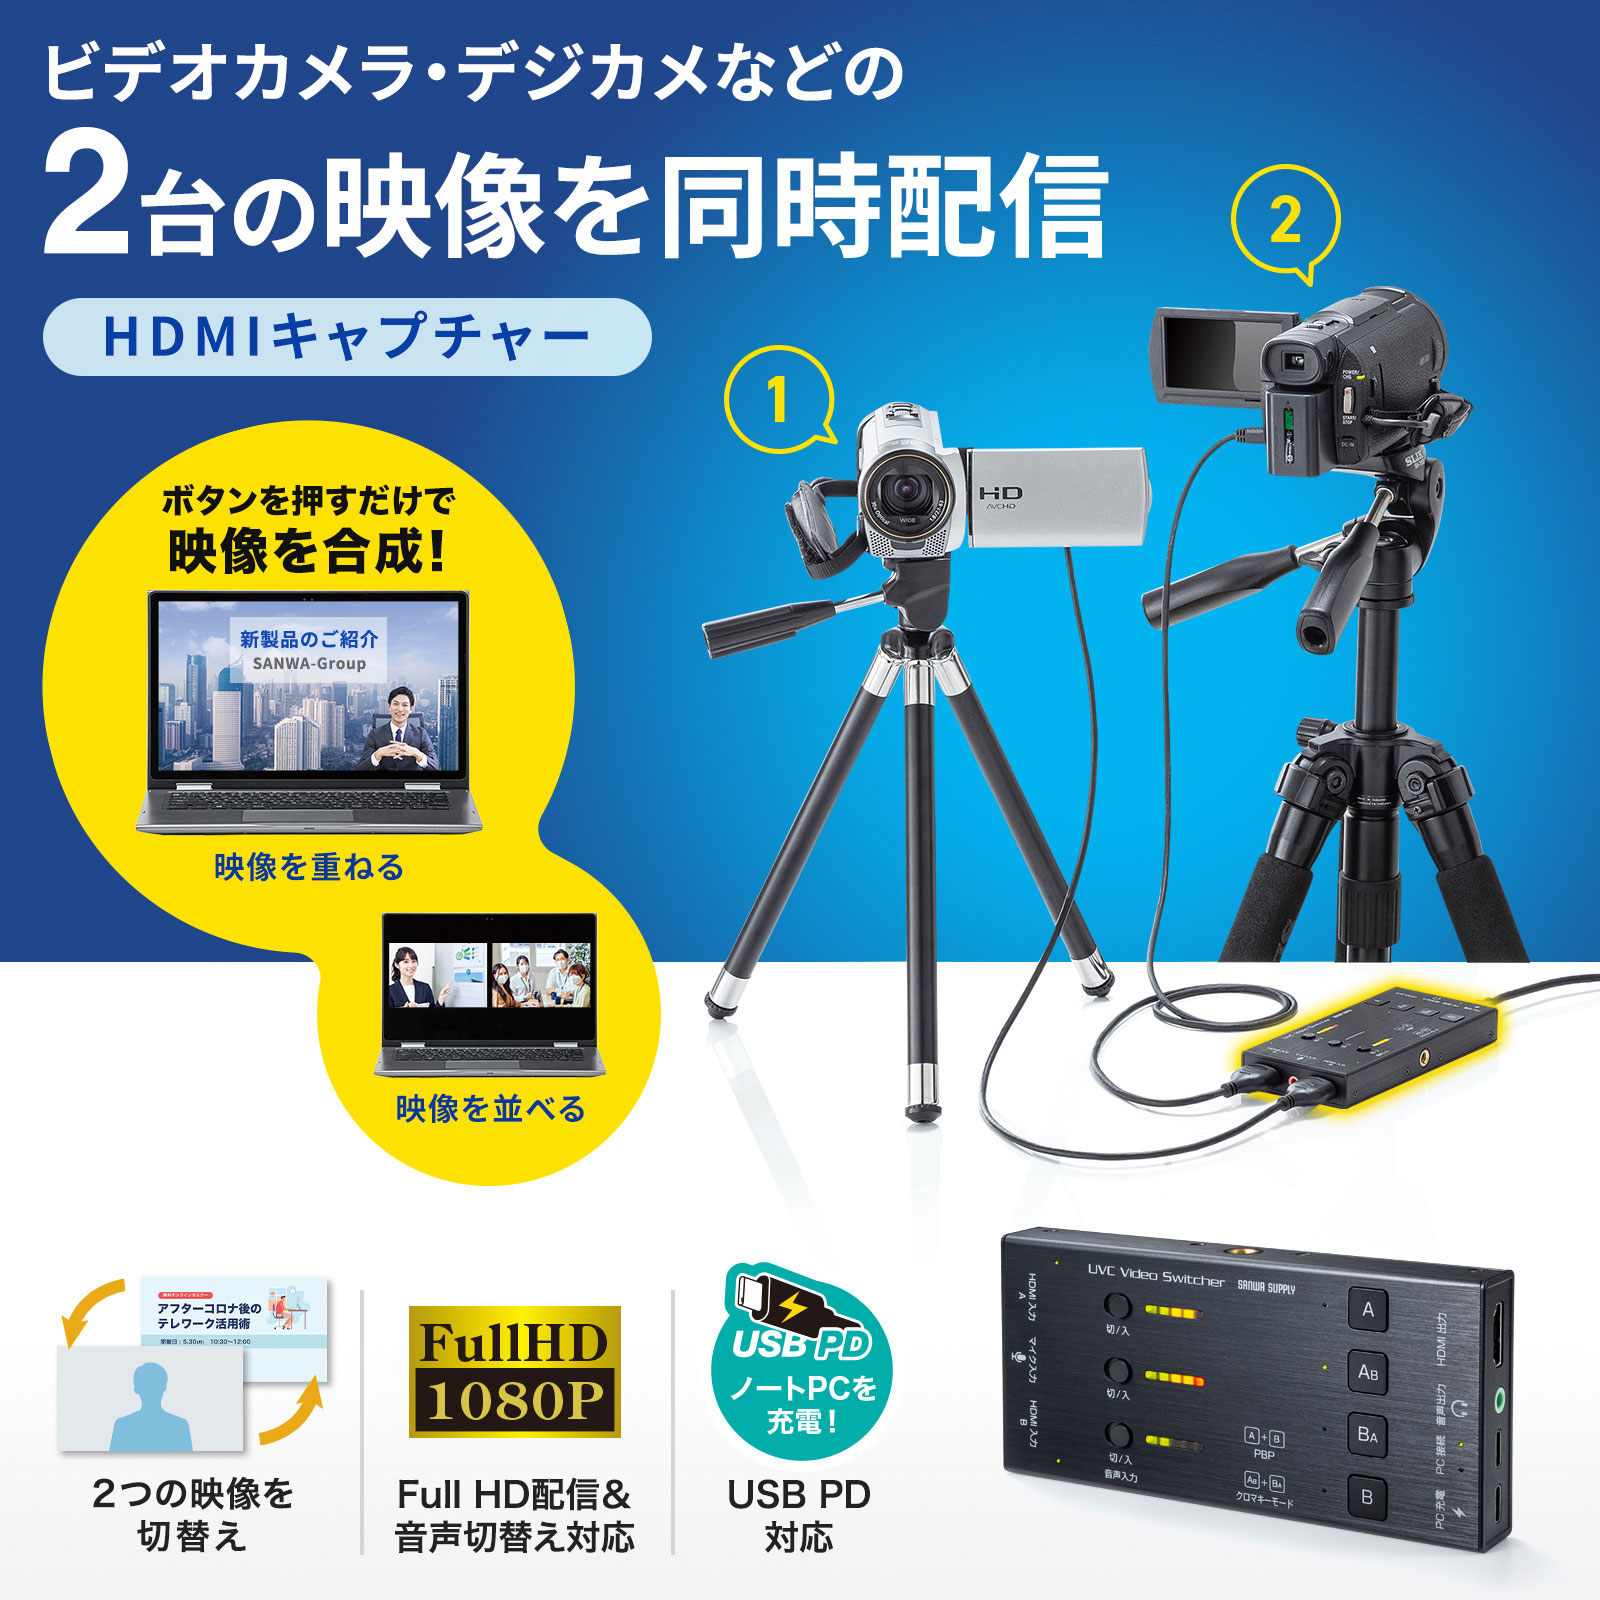 ビデオカメラ、デジカメなどの2台の映像を同時に配信できるHDMI